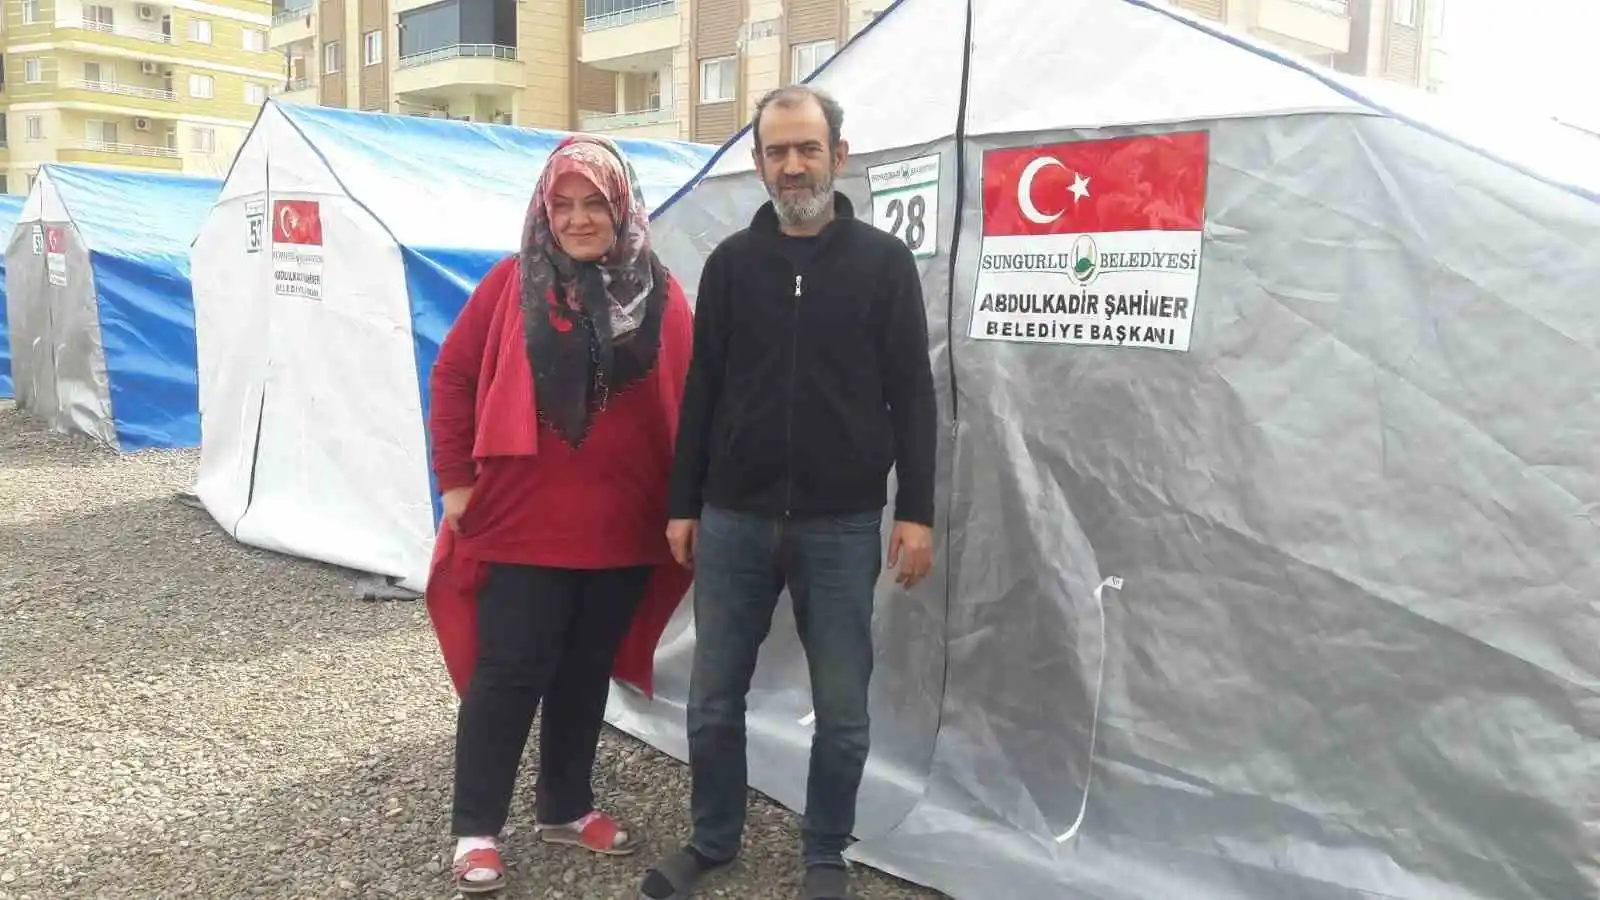 Sungurlu Belediyesi İskenderun’da çadır kent kurdu
